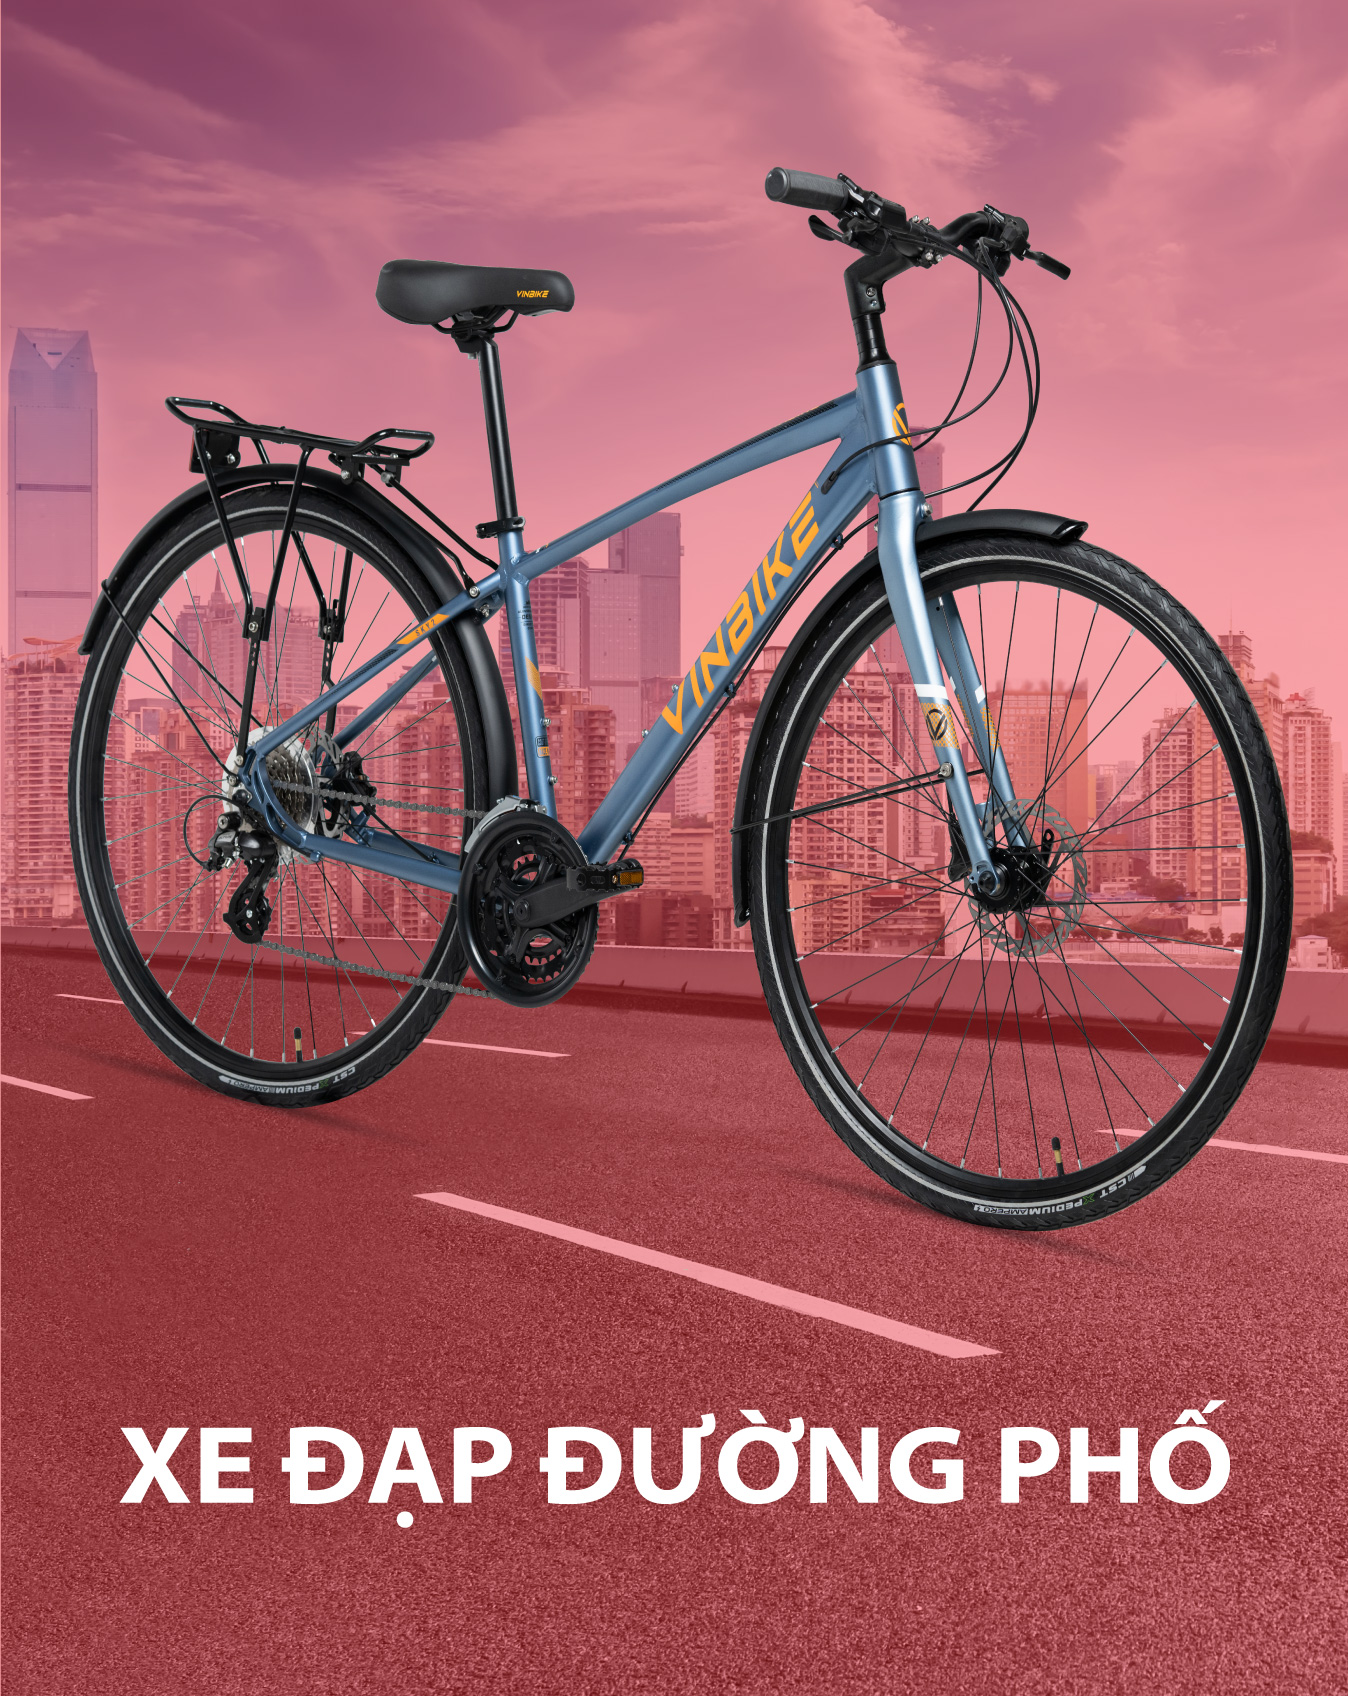 Xe đạp thể thao Trinx M136 giá rẻ chính hãng từ Xe đạp thế giới